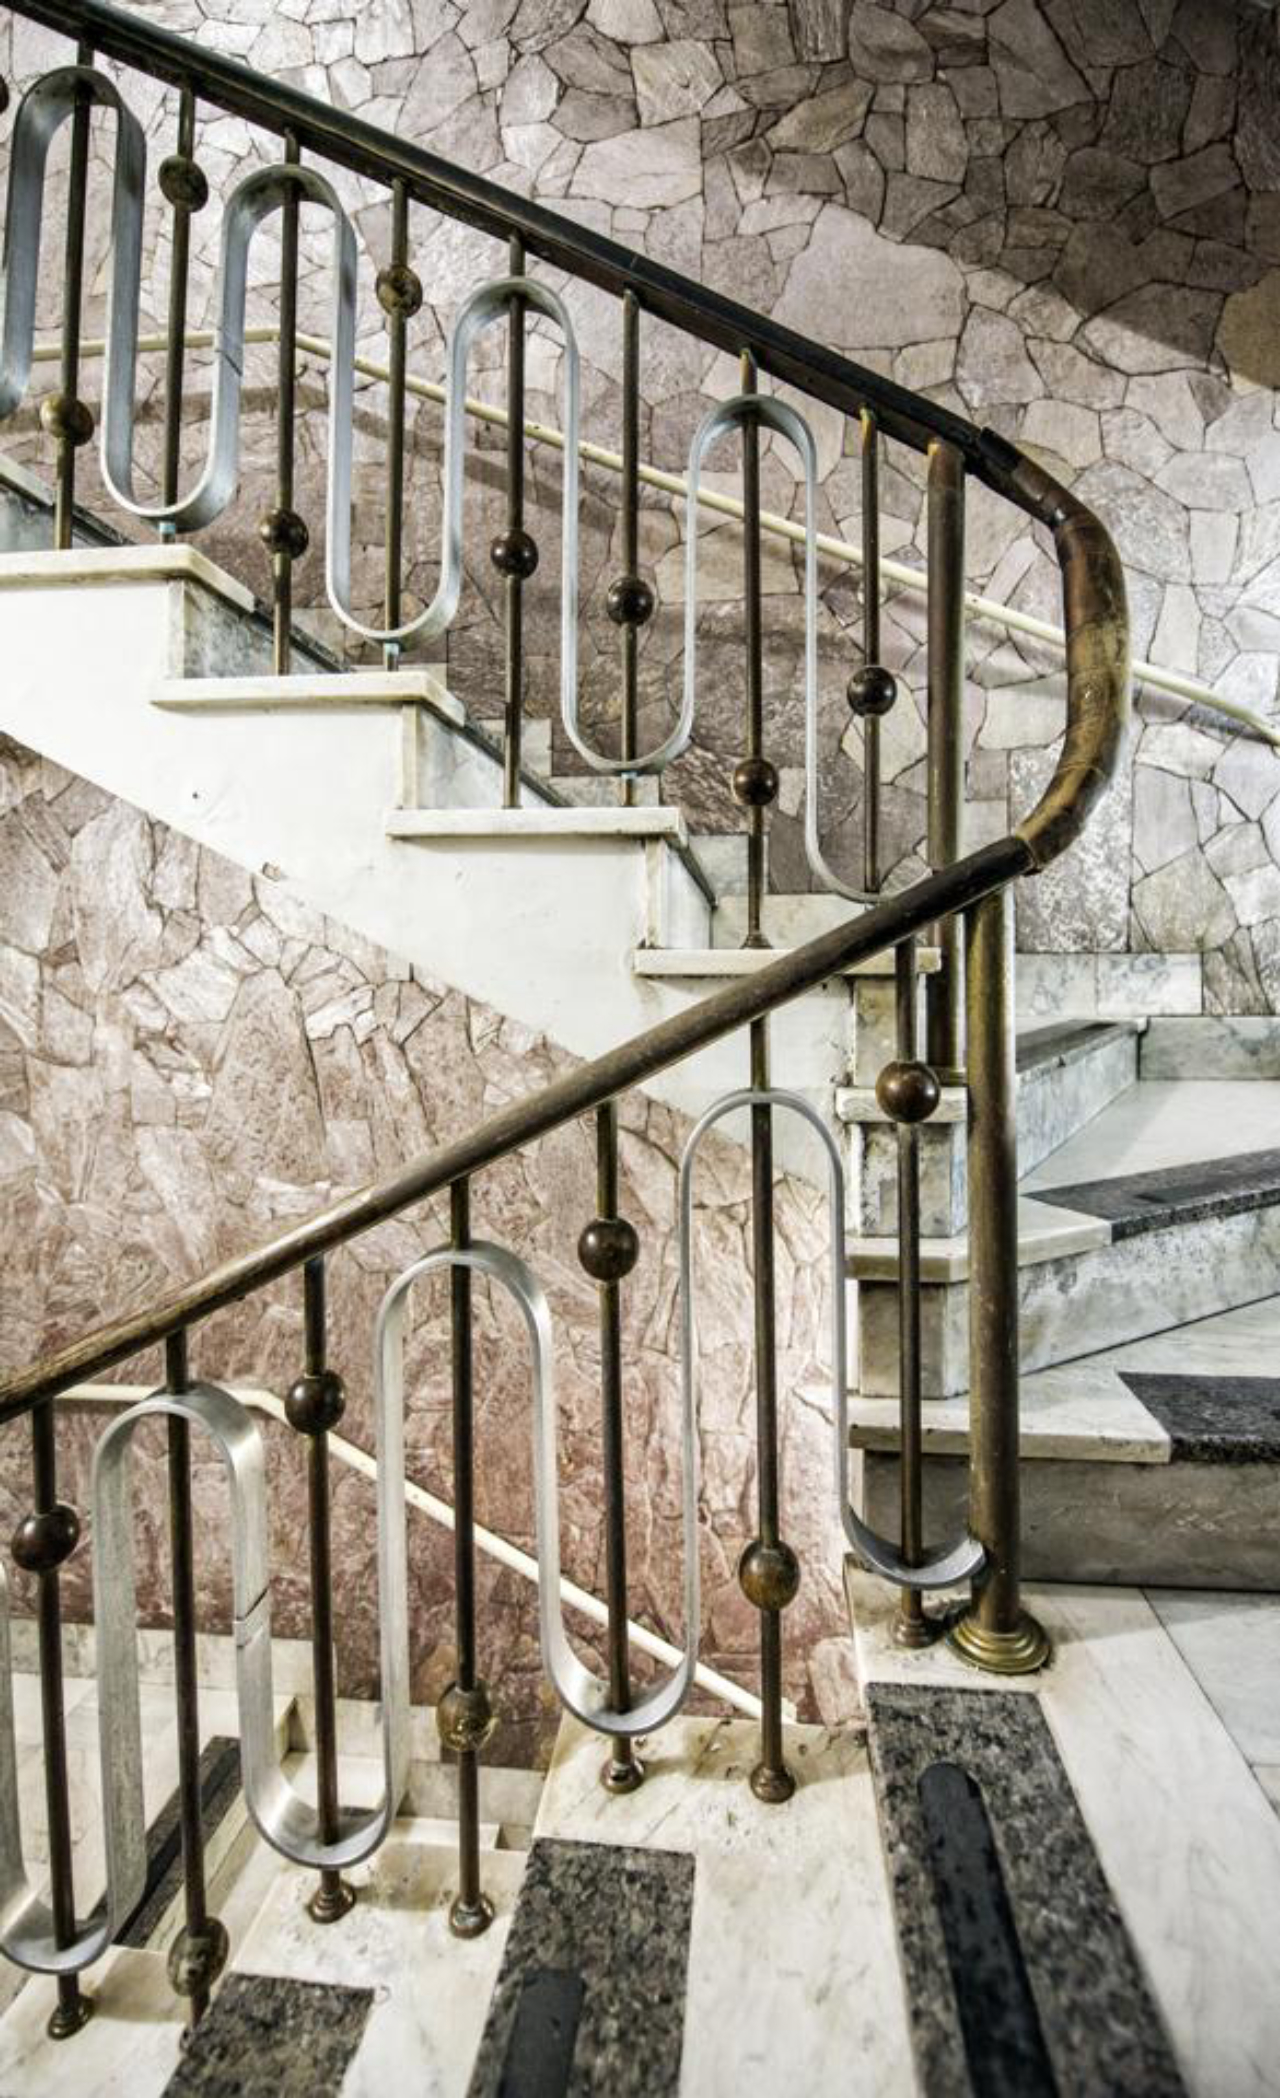 O corrimão das escadas do prédio é ornamentado em estilo arte decó. Essa foi uma das concessões do empreendimento modernista ao tradicional, ainda tão caro para a população curitibana da década de 1950